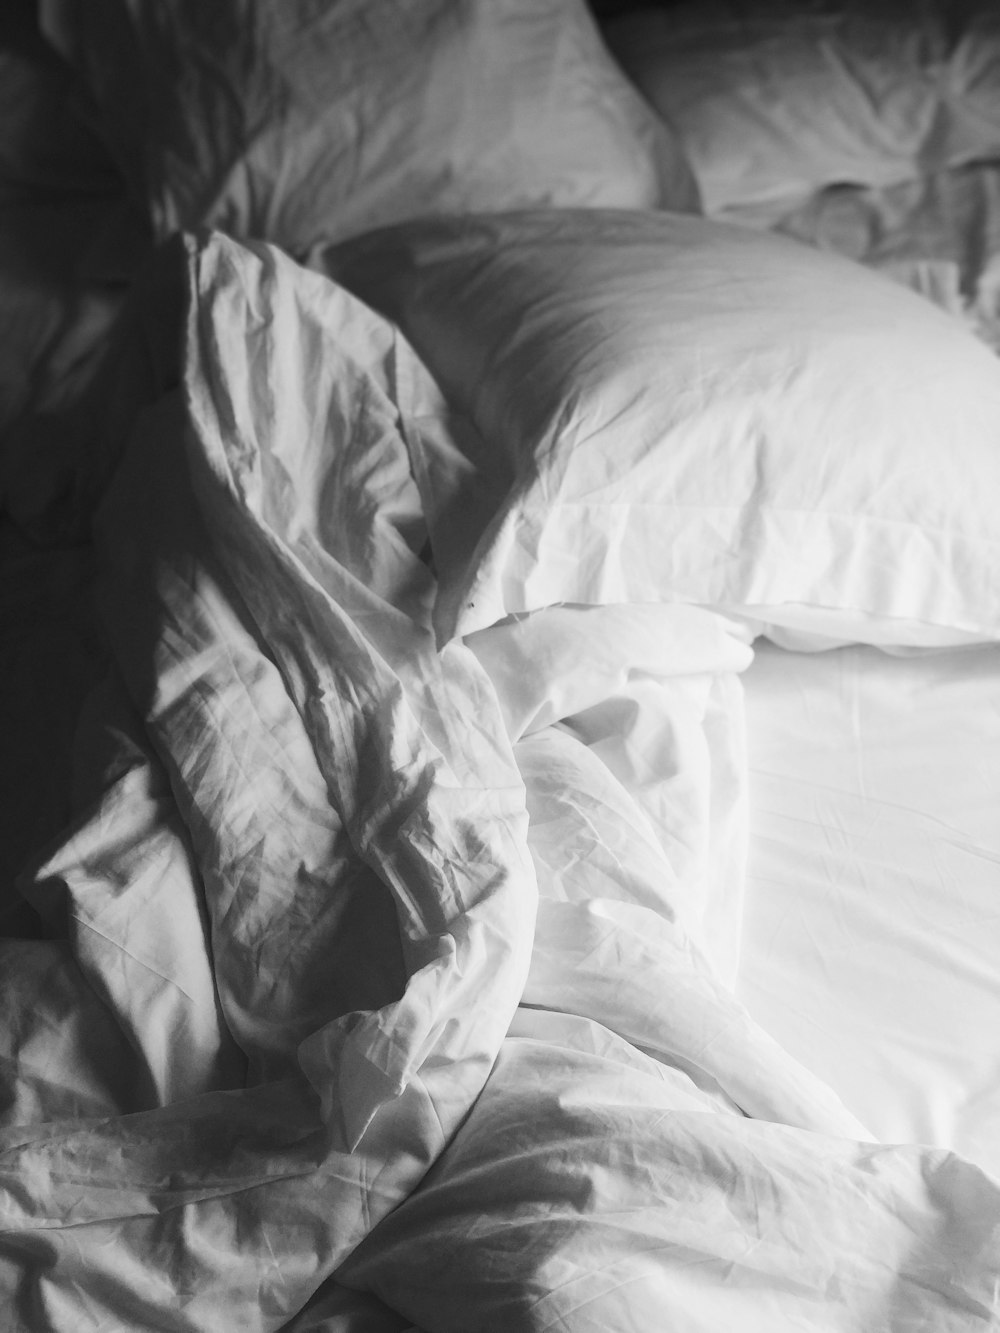 biancheria da letto bianca sul letto